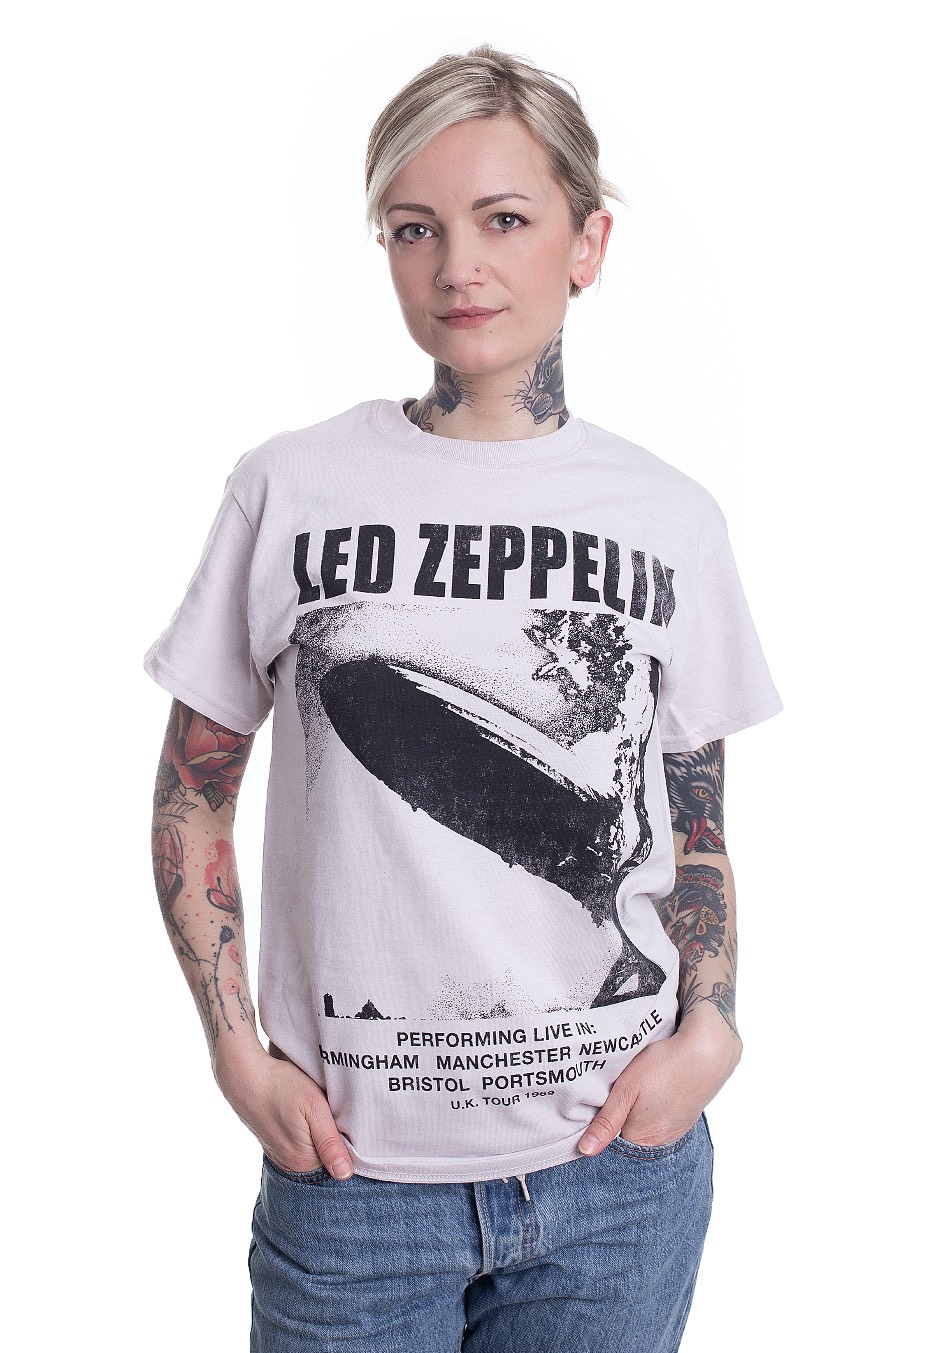 Led Zeppelin - UK Tour '69 LZ1 Grey - - T-Shirts